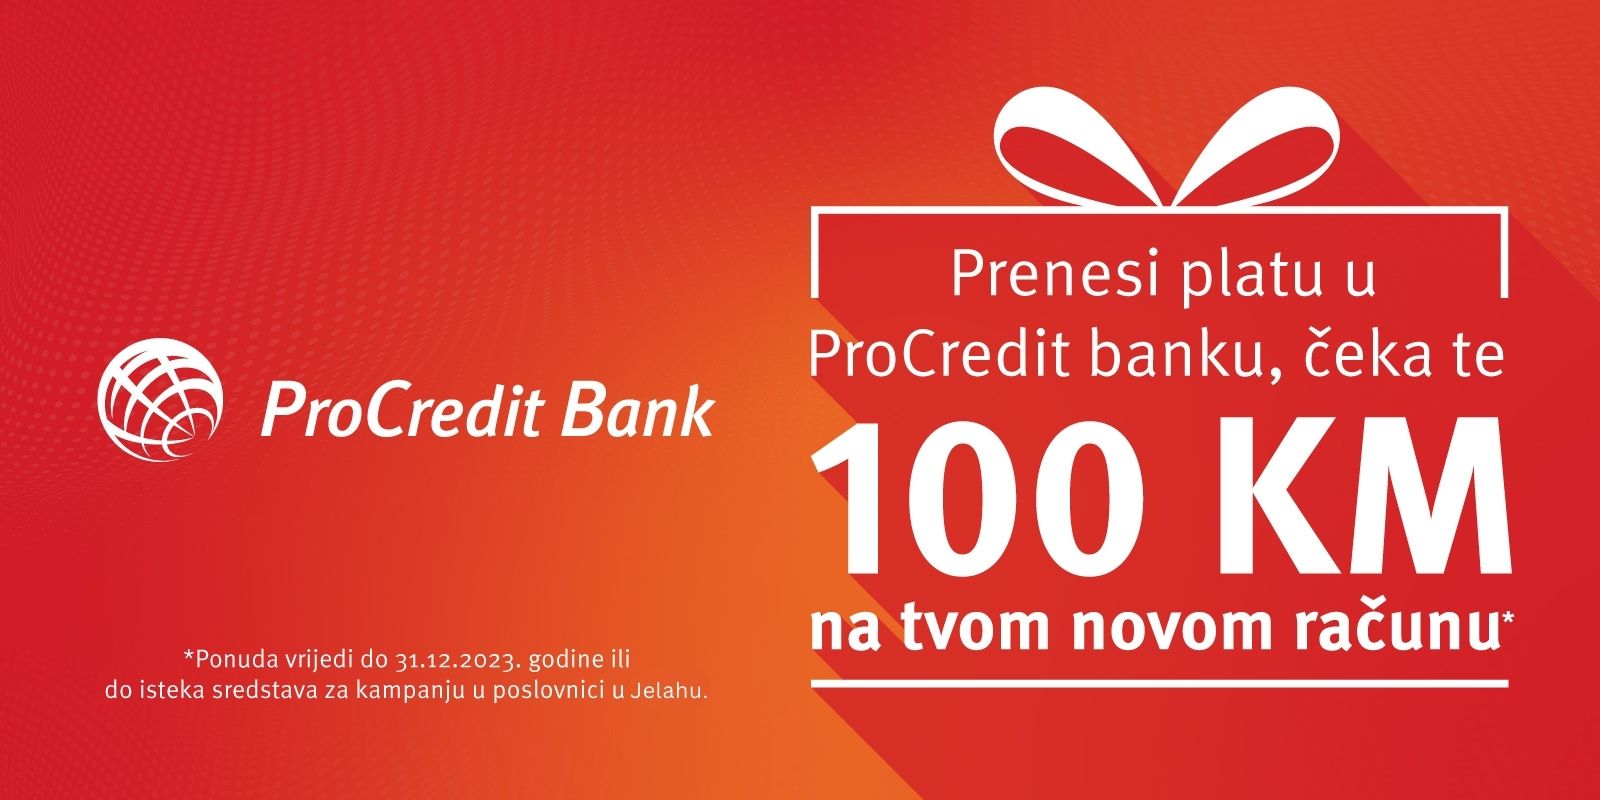 Prenesi platu u ProCredit banku, čeka te 100 KM na tvom novom računu!